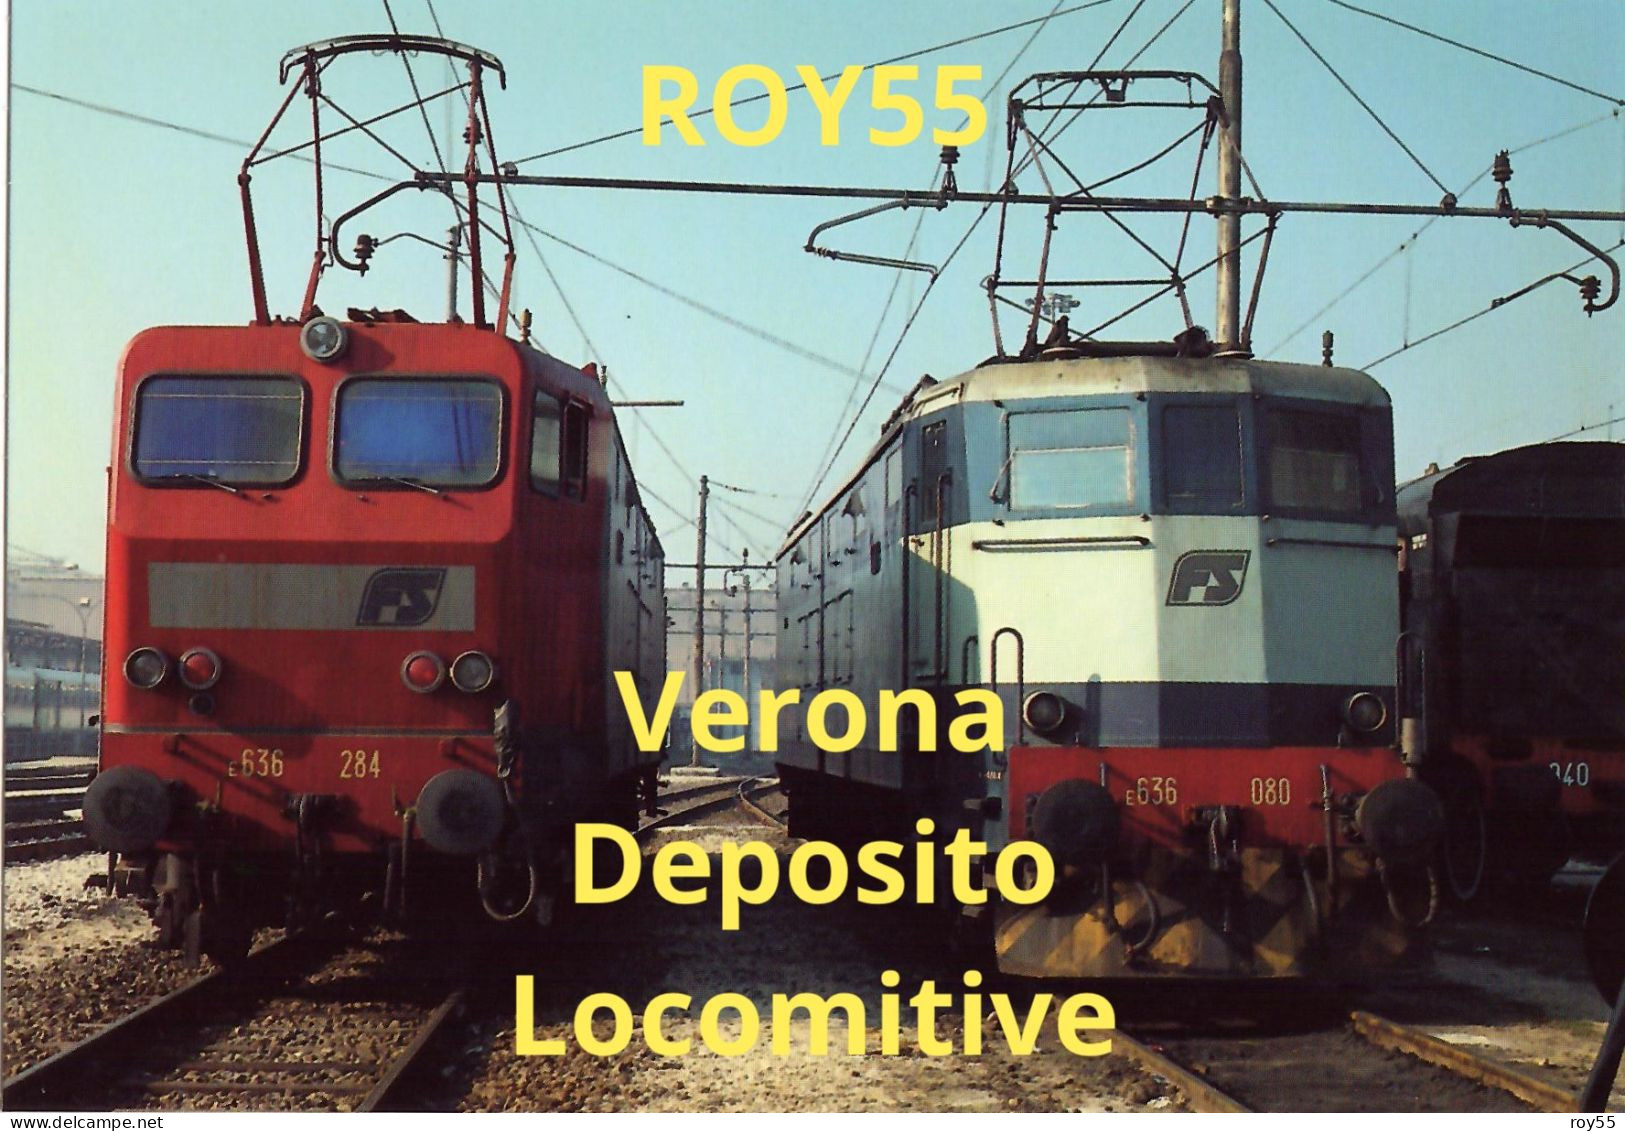 Veneto Verona Stazione Ferroviaria Del Deposito Locomotive Di Verona Treni Locomotori In Sosta Nel 1991 (v.retro) - Treinen